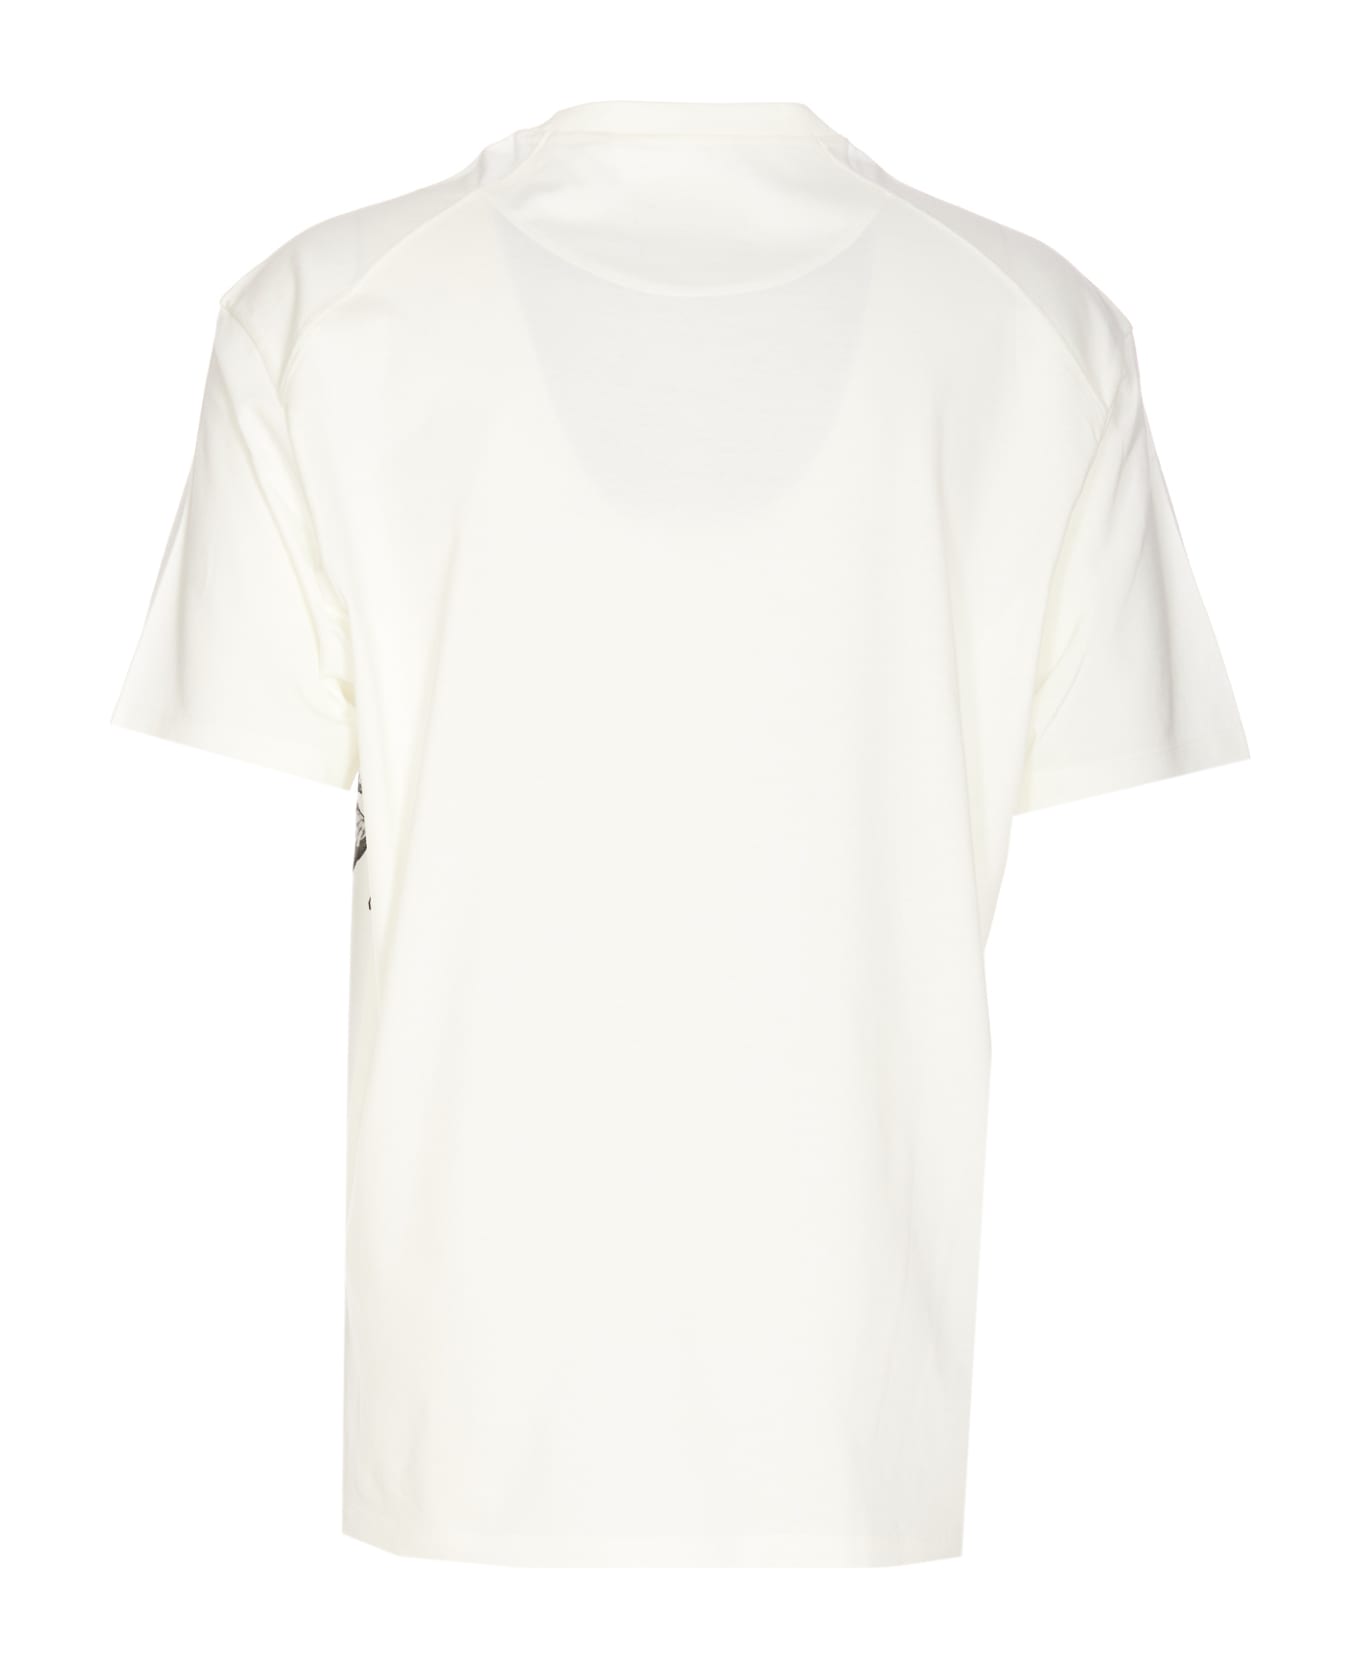 Y-3 Gfx T-shirt - WHITE シャツ